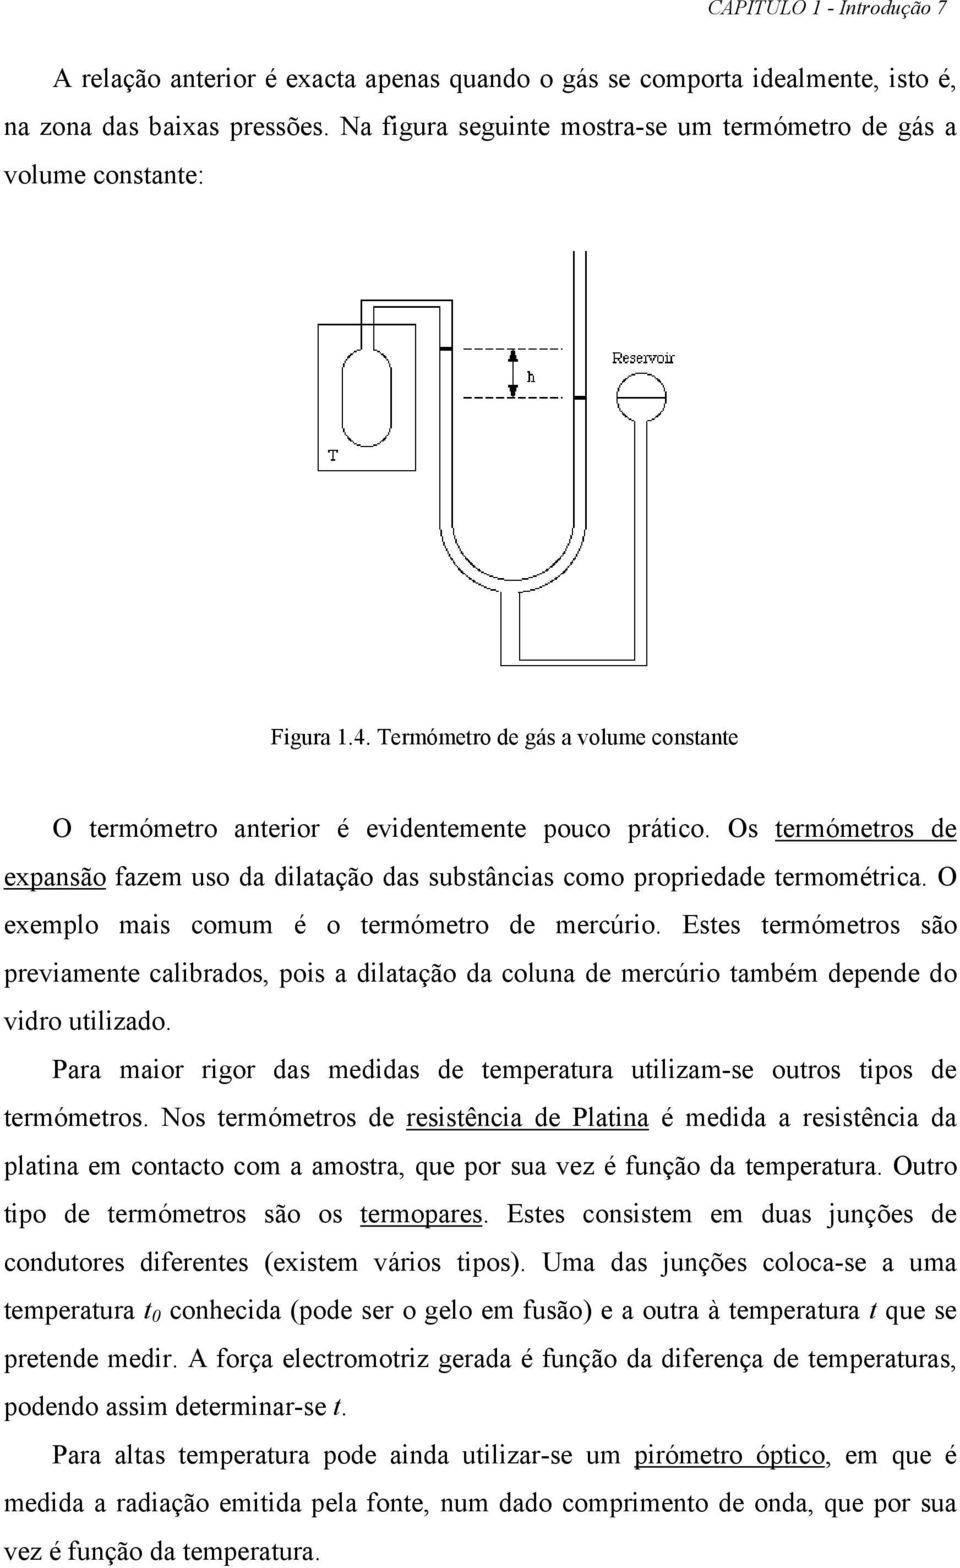 Os termómetros de expansão fazem uso da dilatação das substânias omo propriedade termométria. O exemplo mais omum é o termómetro de merúrio.